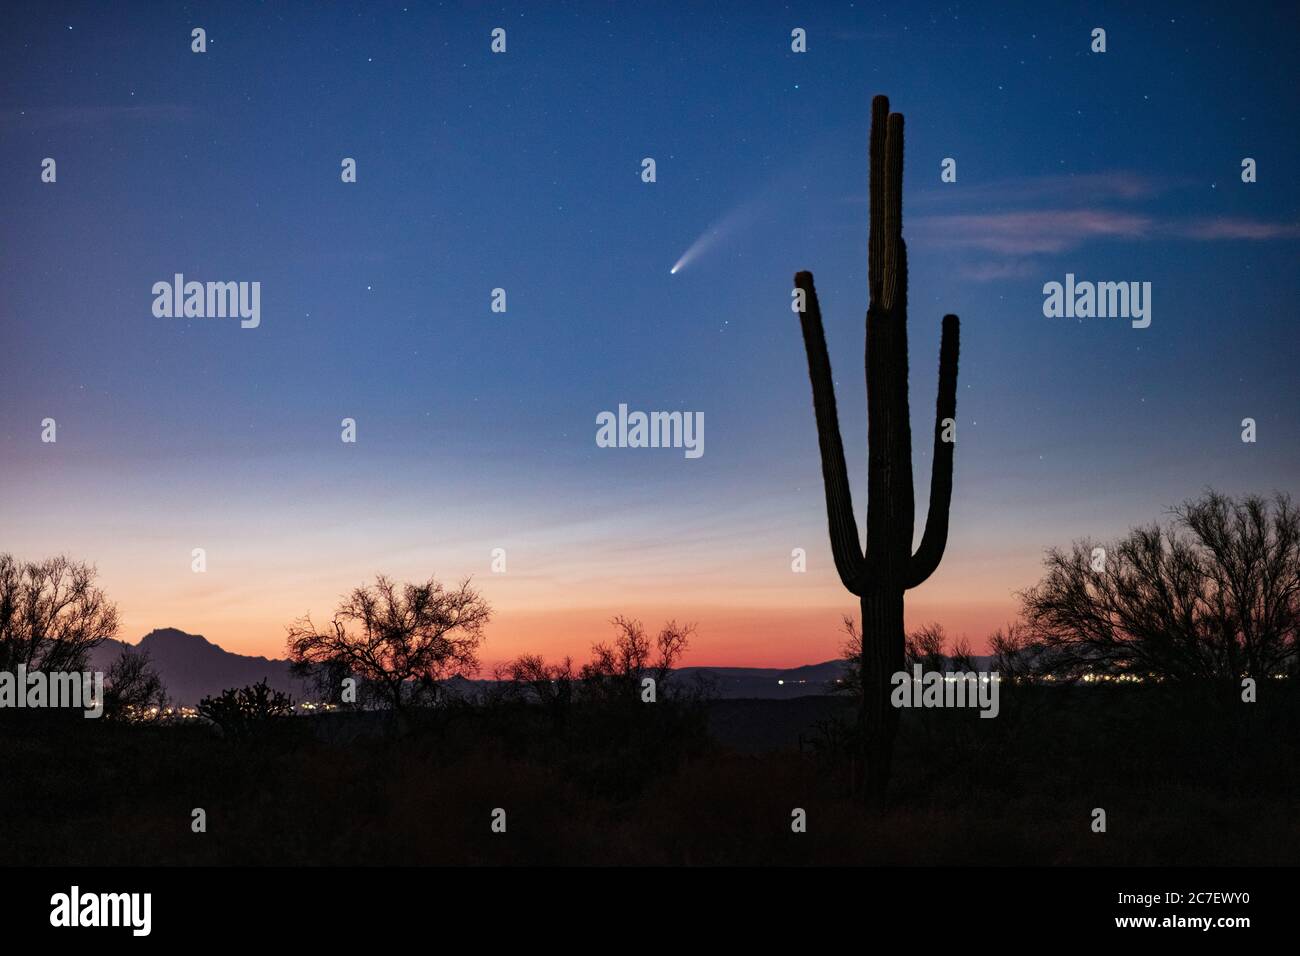 Paysage désertique pittoresque avec Comet Neowise derrière un Cactus Saguaro et le ciel de coucher de soleil près de Phoenix, Arizona Banque D'Images